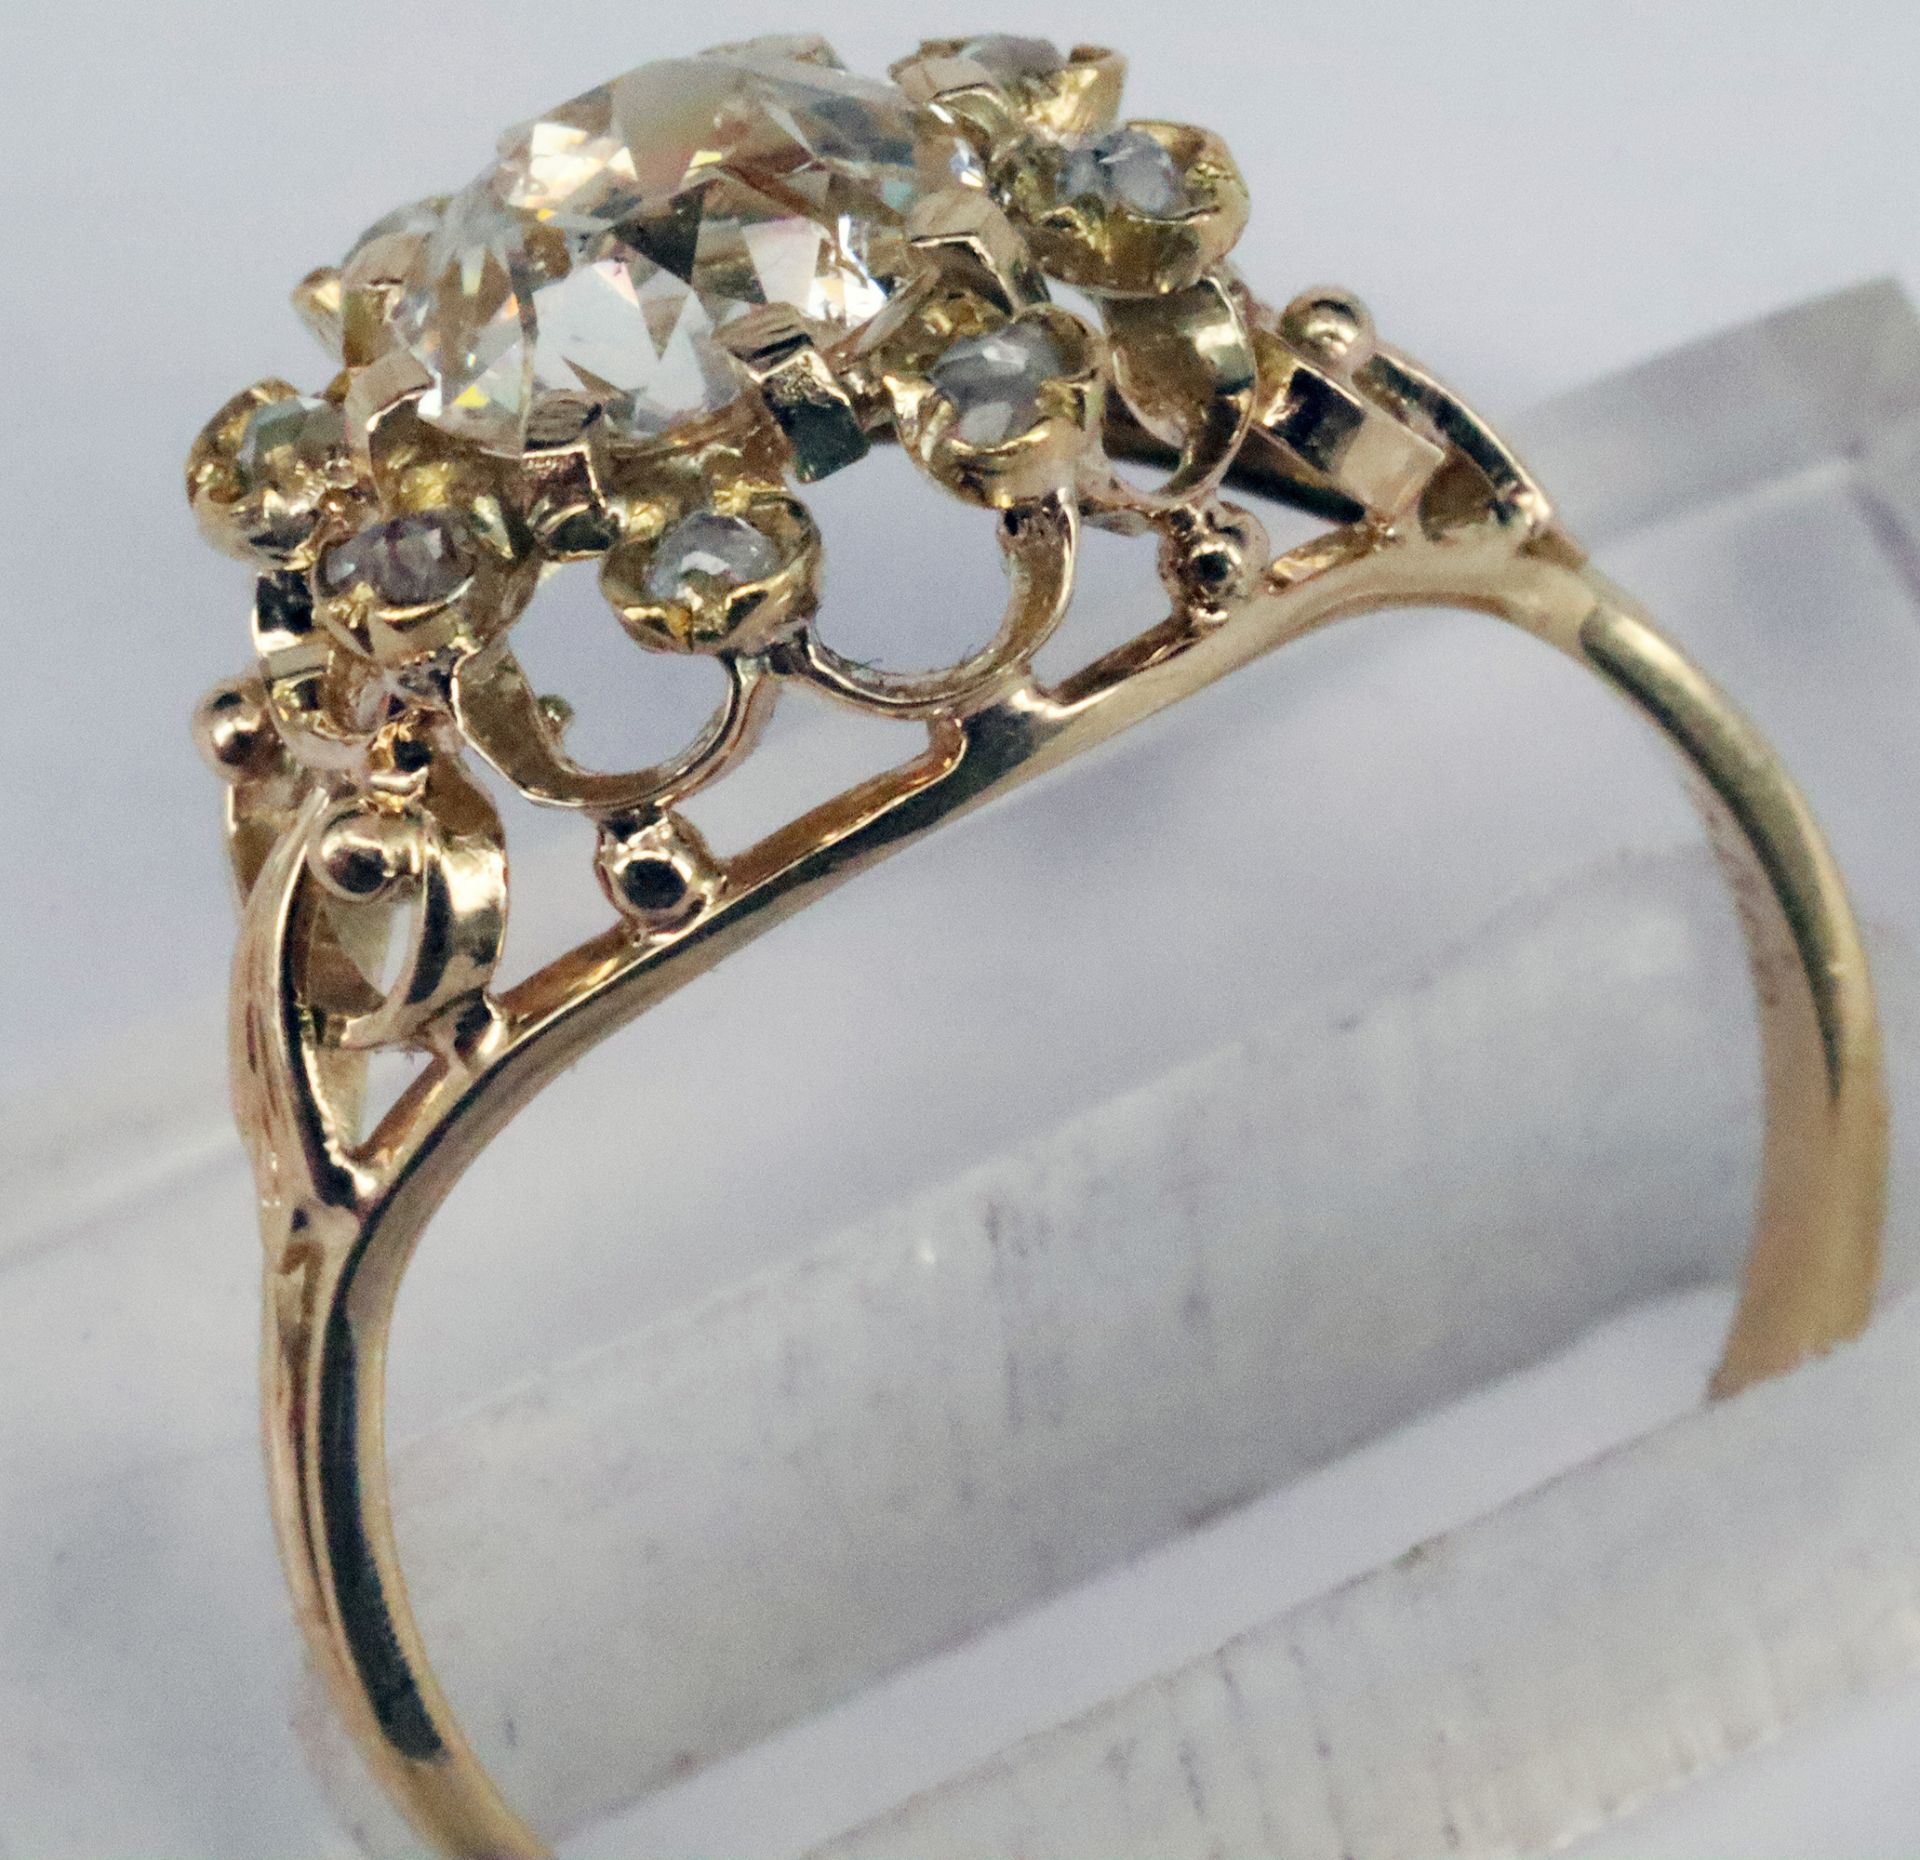 Ring, 585er GG, mit großem Altschliff-Diamanten, ca. 0,75 mm, ca. 1,5 ct, p, Stein mit Riss bzw. - Image 3 of 5